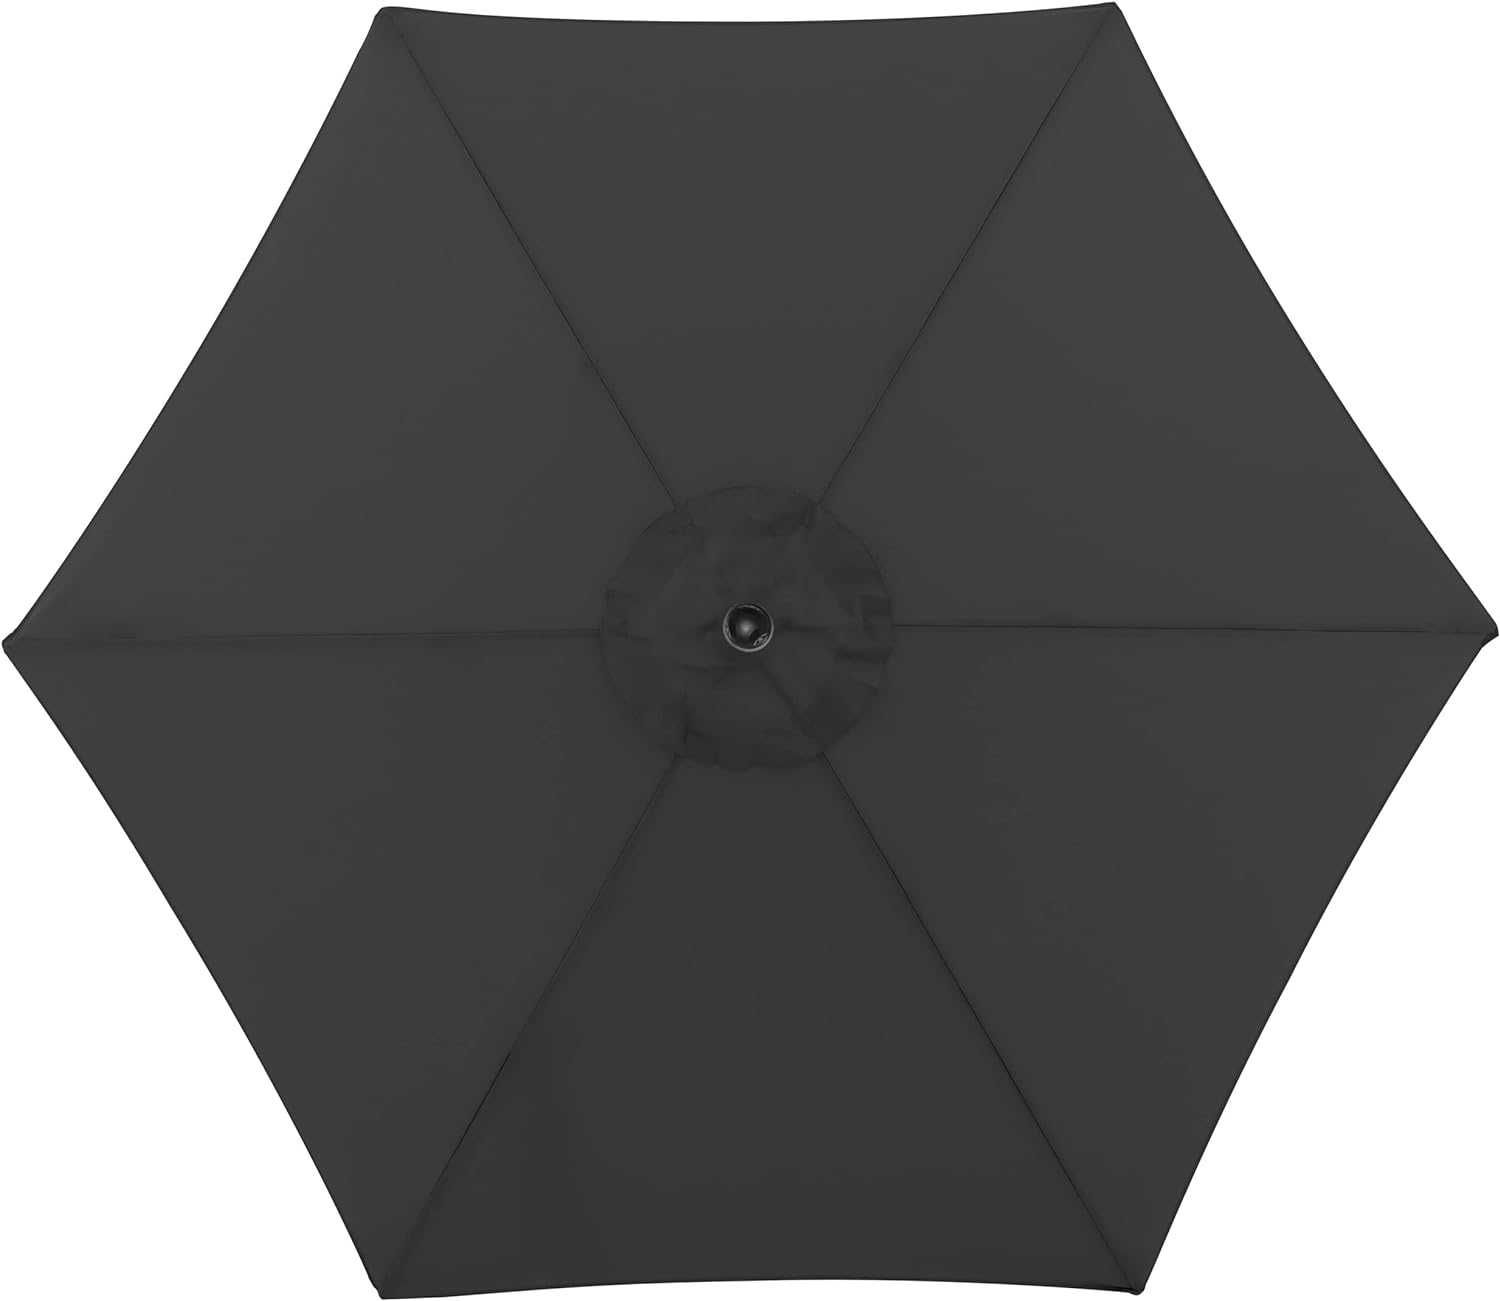 парасоля садова на терасу Doppler Parasol Jack, 250 cm, Dark Grey